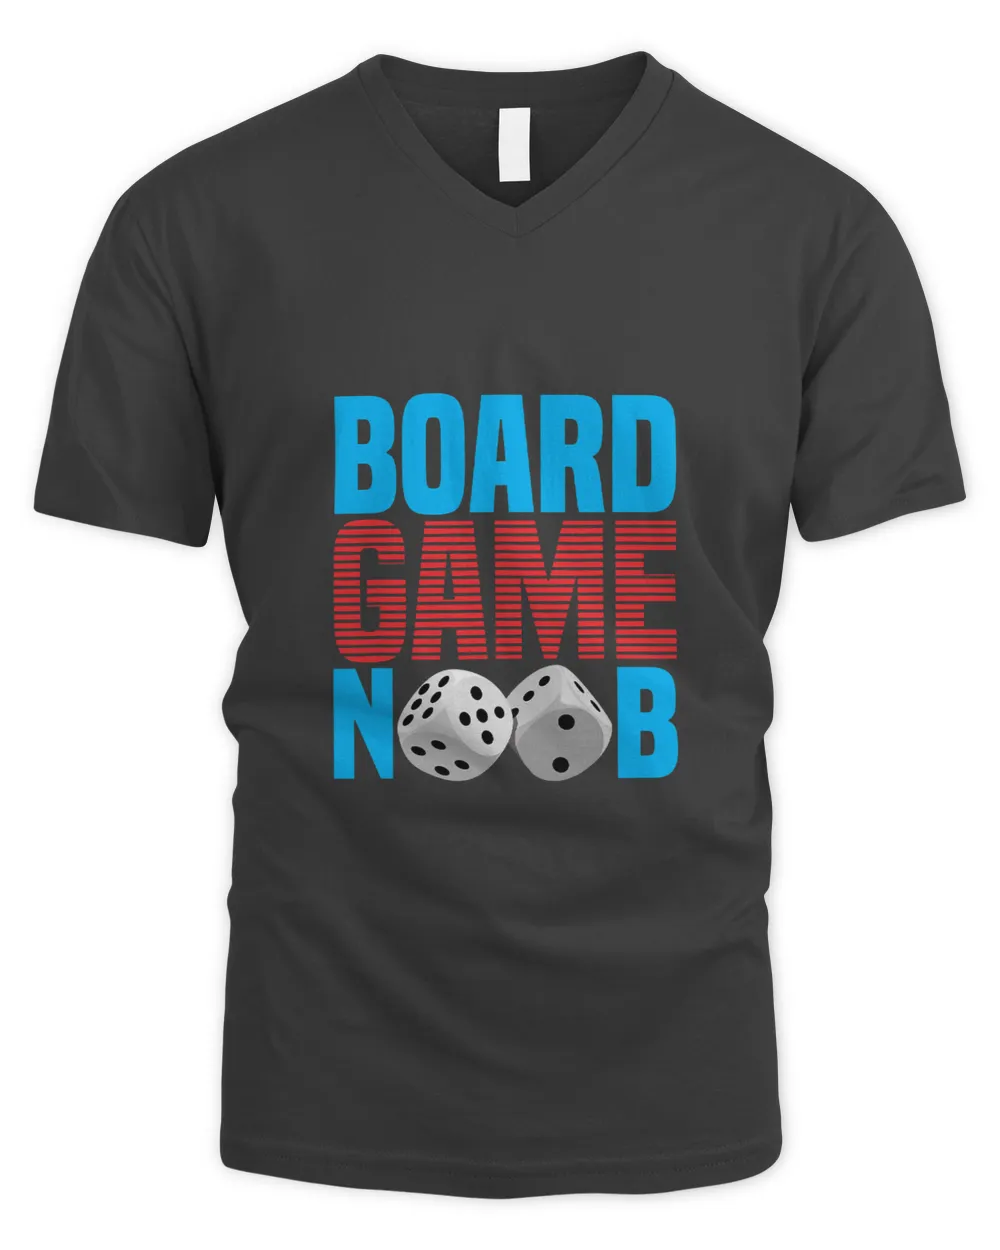 Board game Noob board game board gamer board games